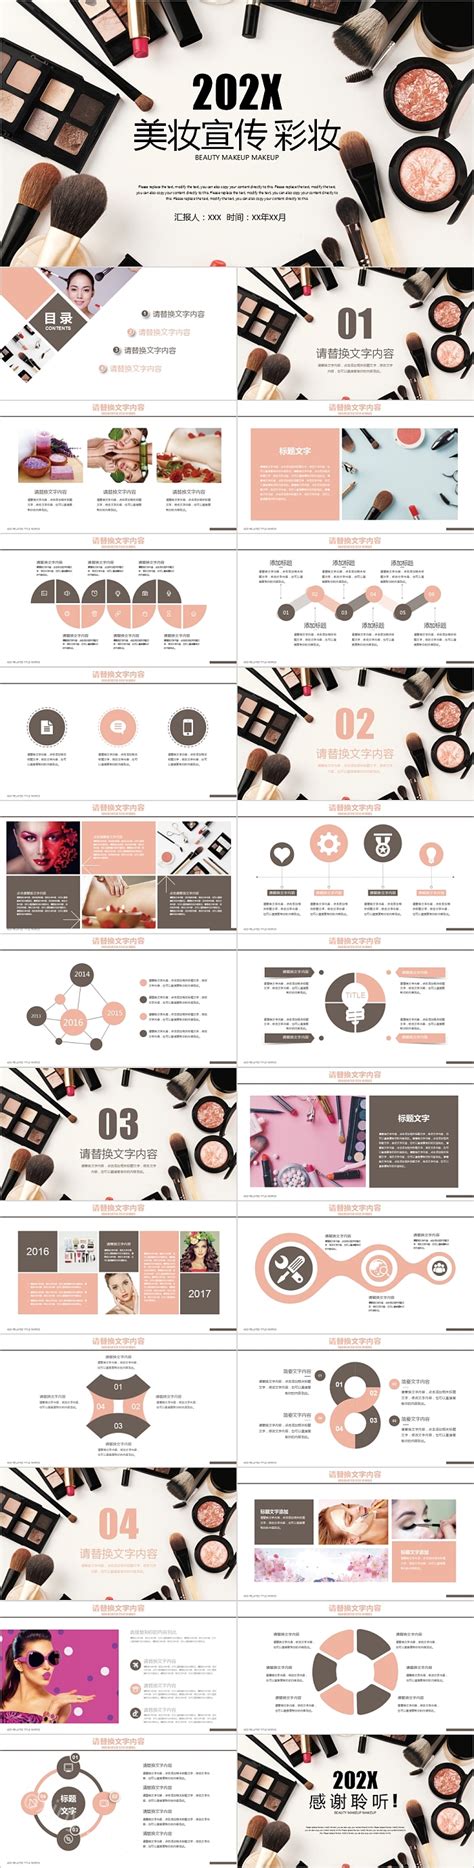 美妆宣传彩妆产品介绍宣传策划模板-PPT模板-心宜办公